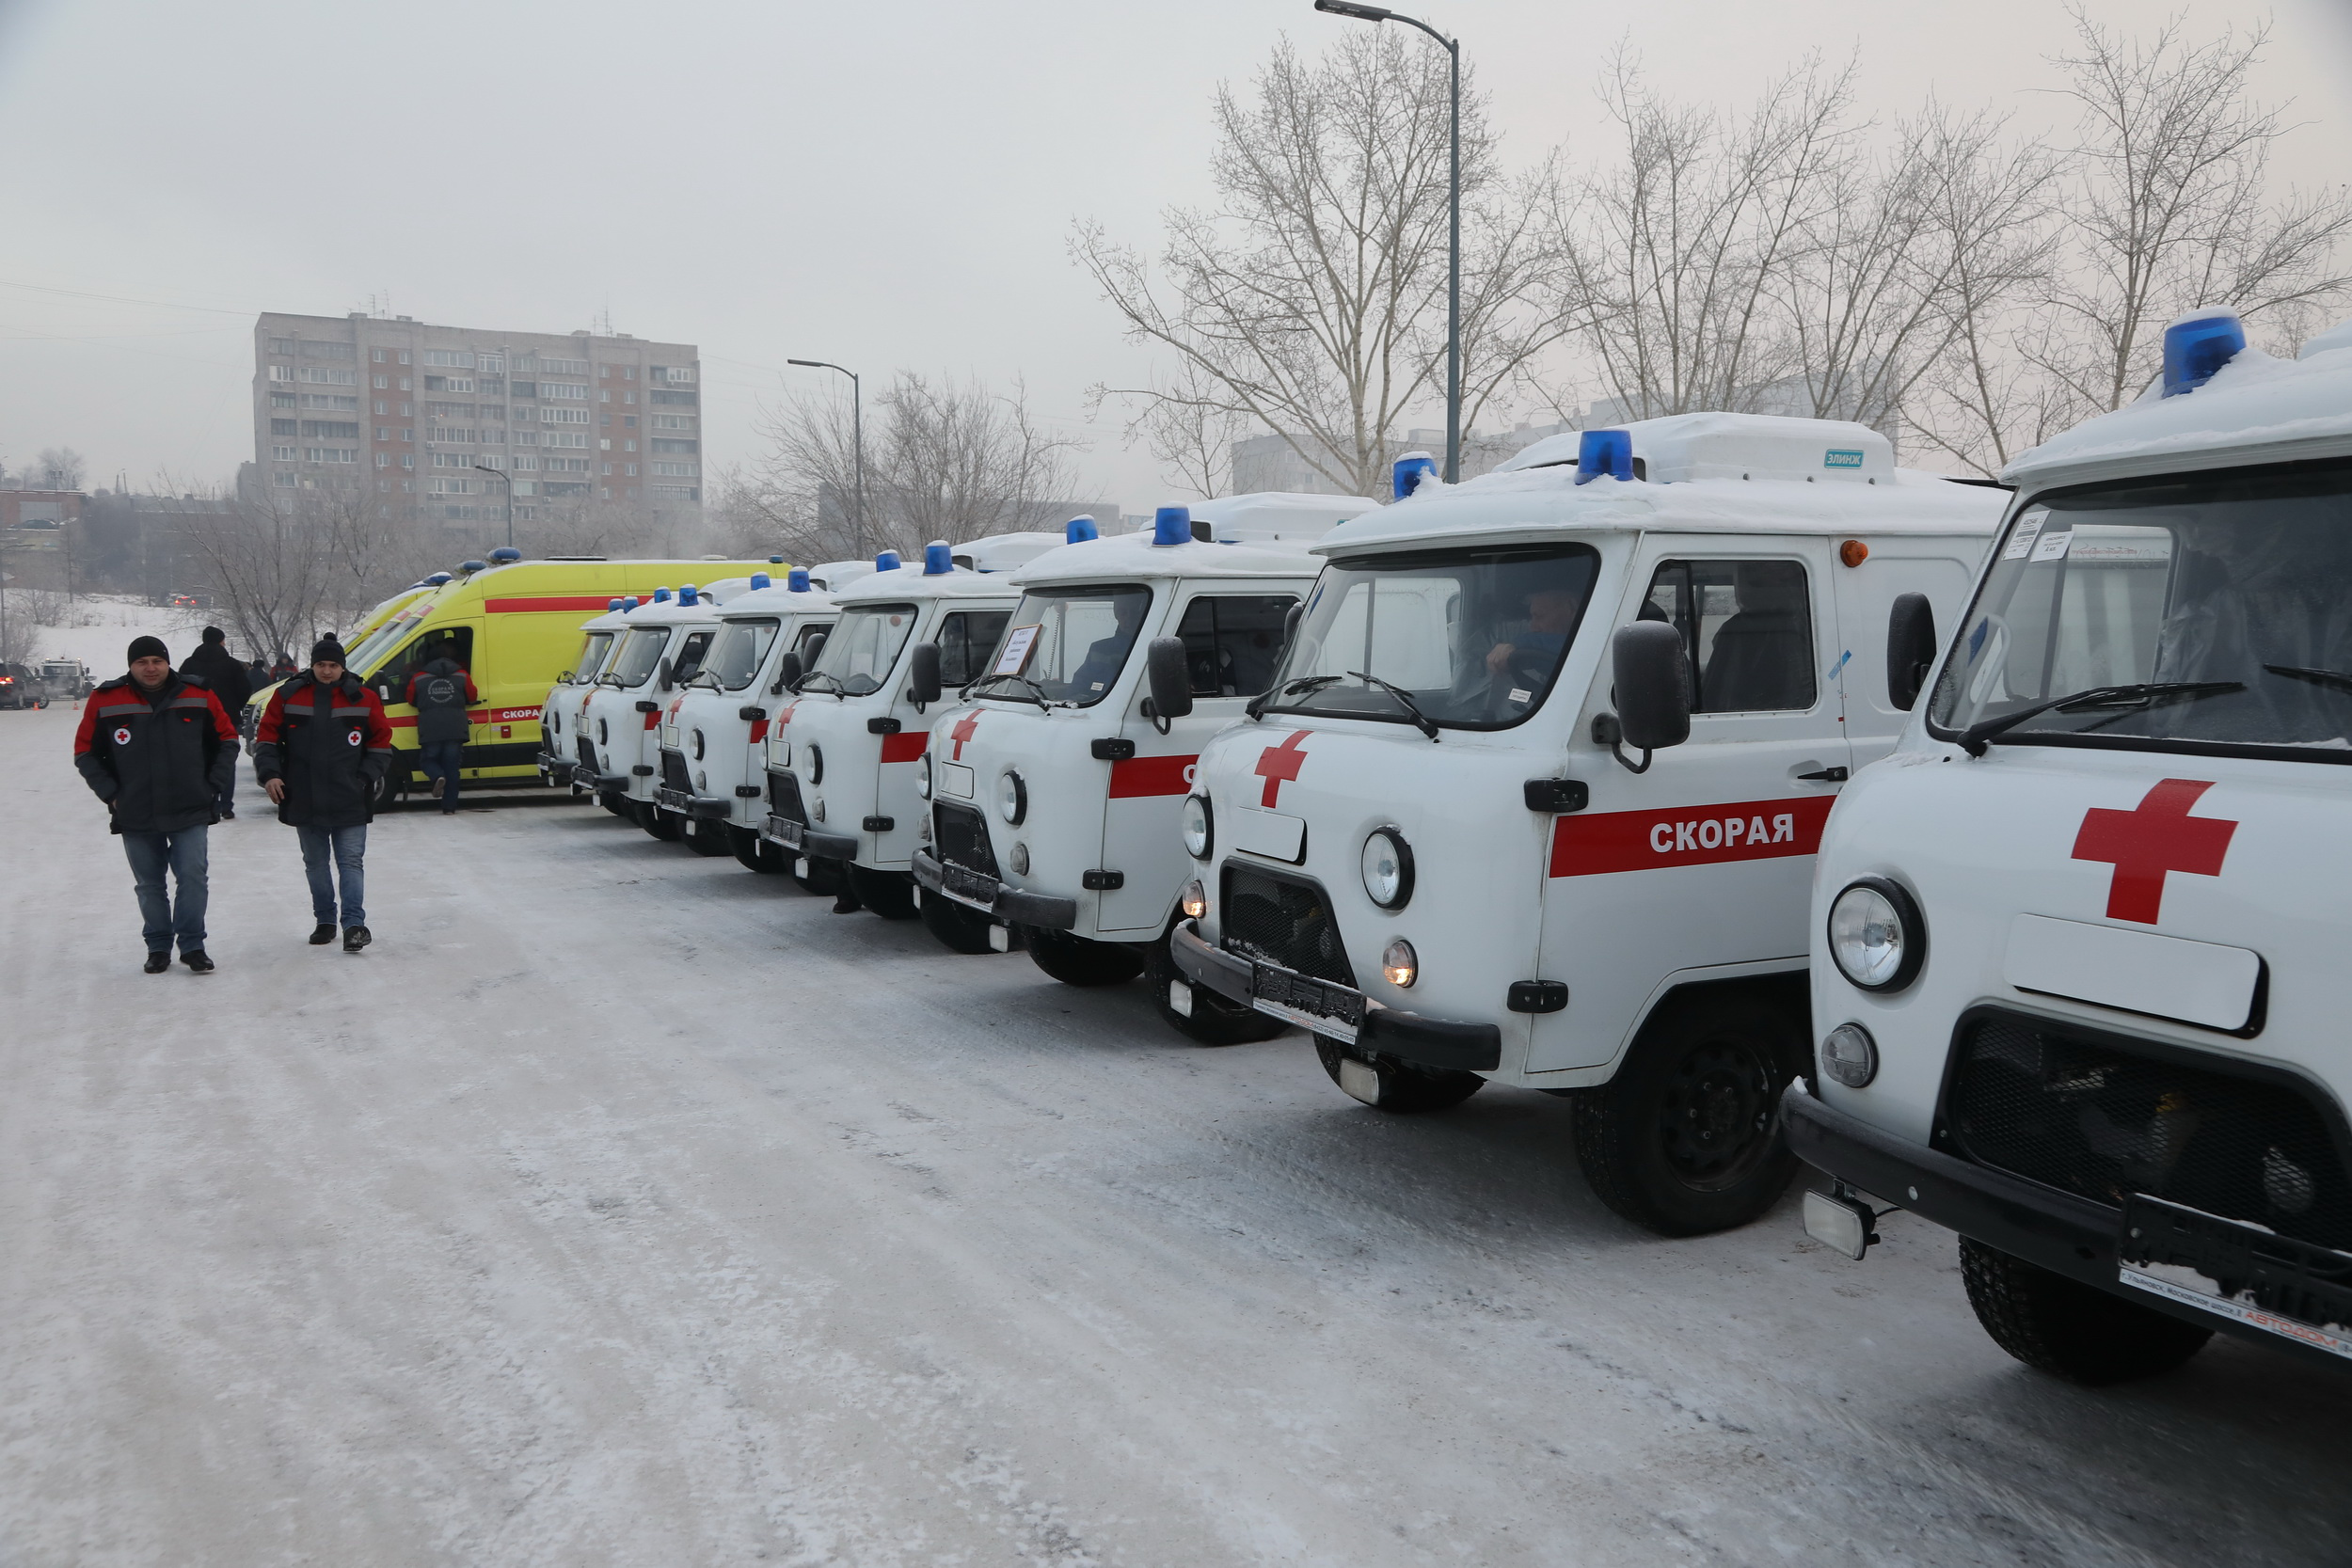 Часть автомобилей останется в Красноярске, часть уедет в районы края